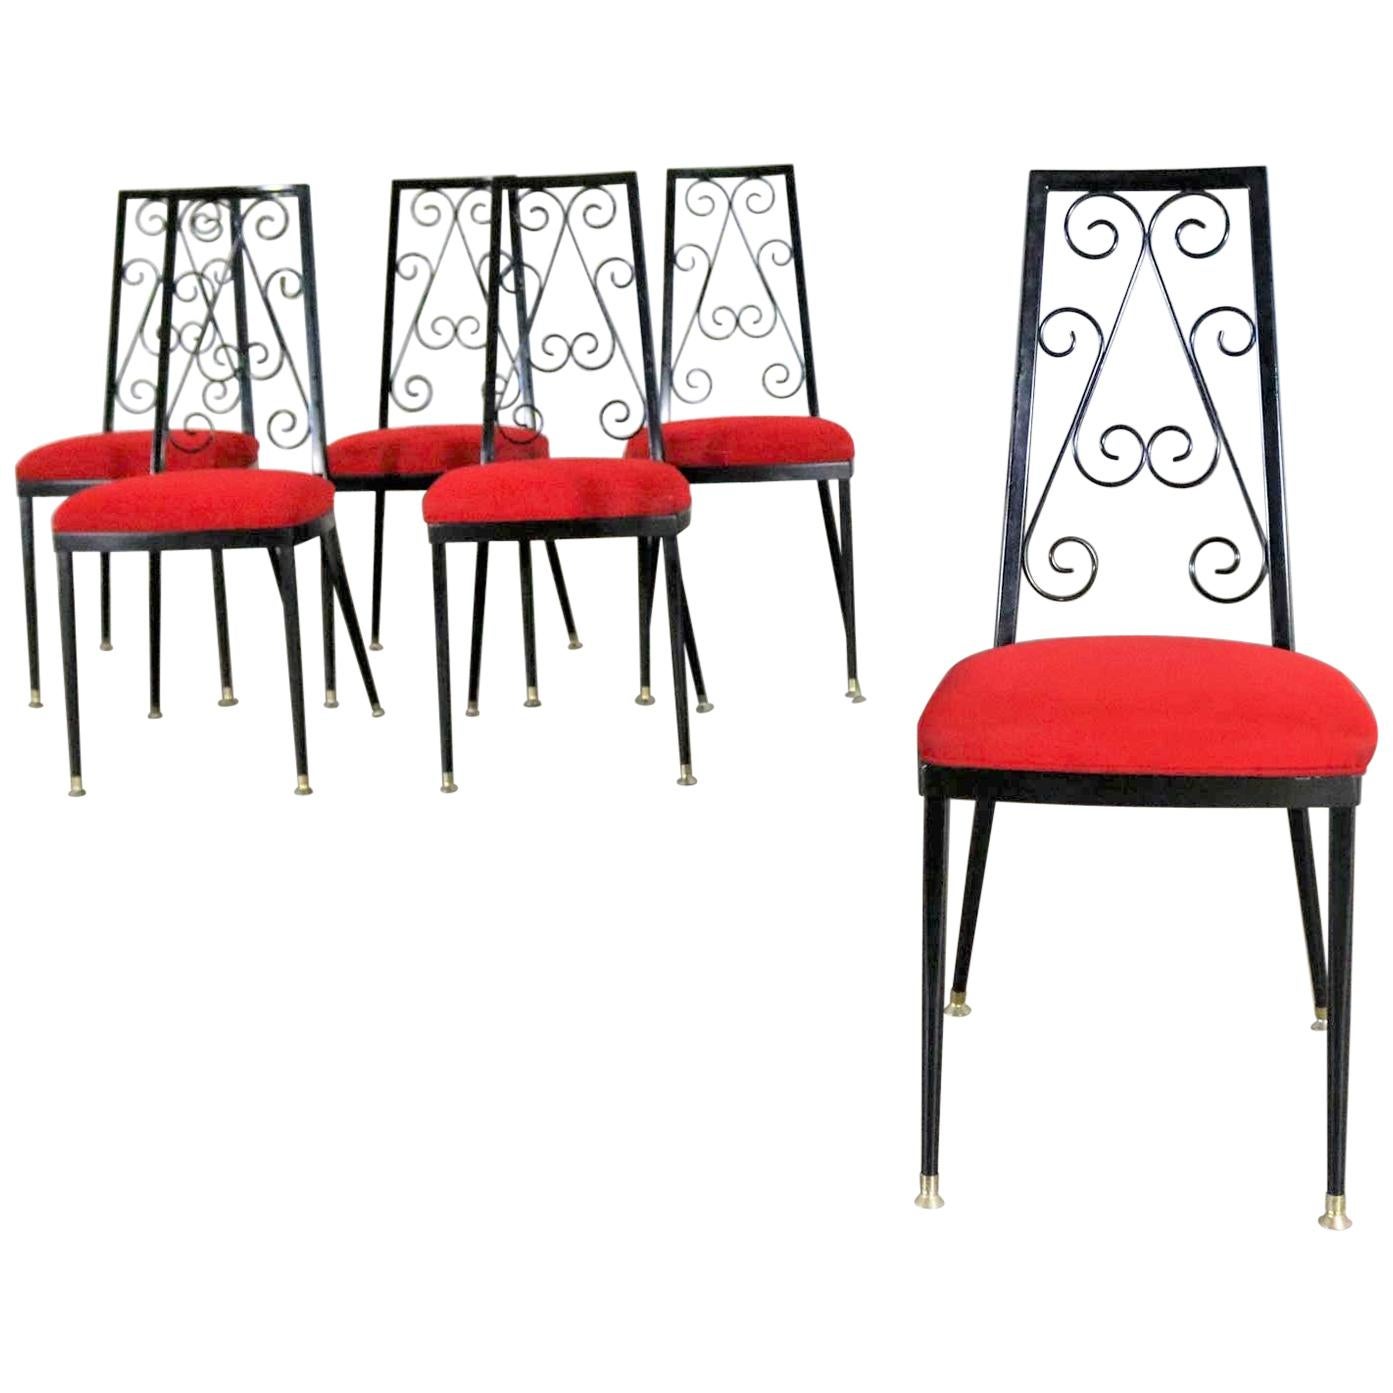 6 Dekorative Esszimmerstühle aus Metall von Chromcraft, rot und schwarz, 1967